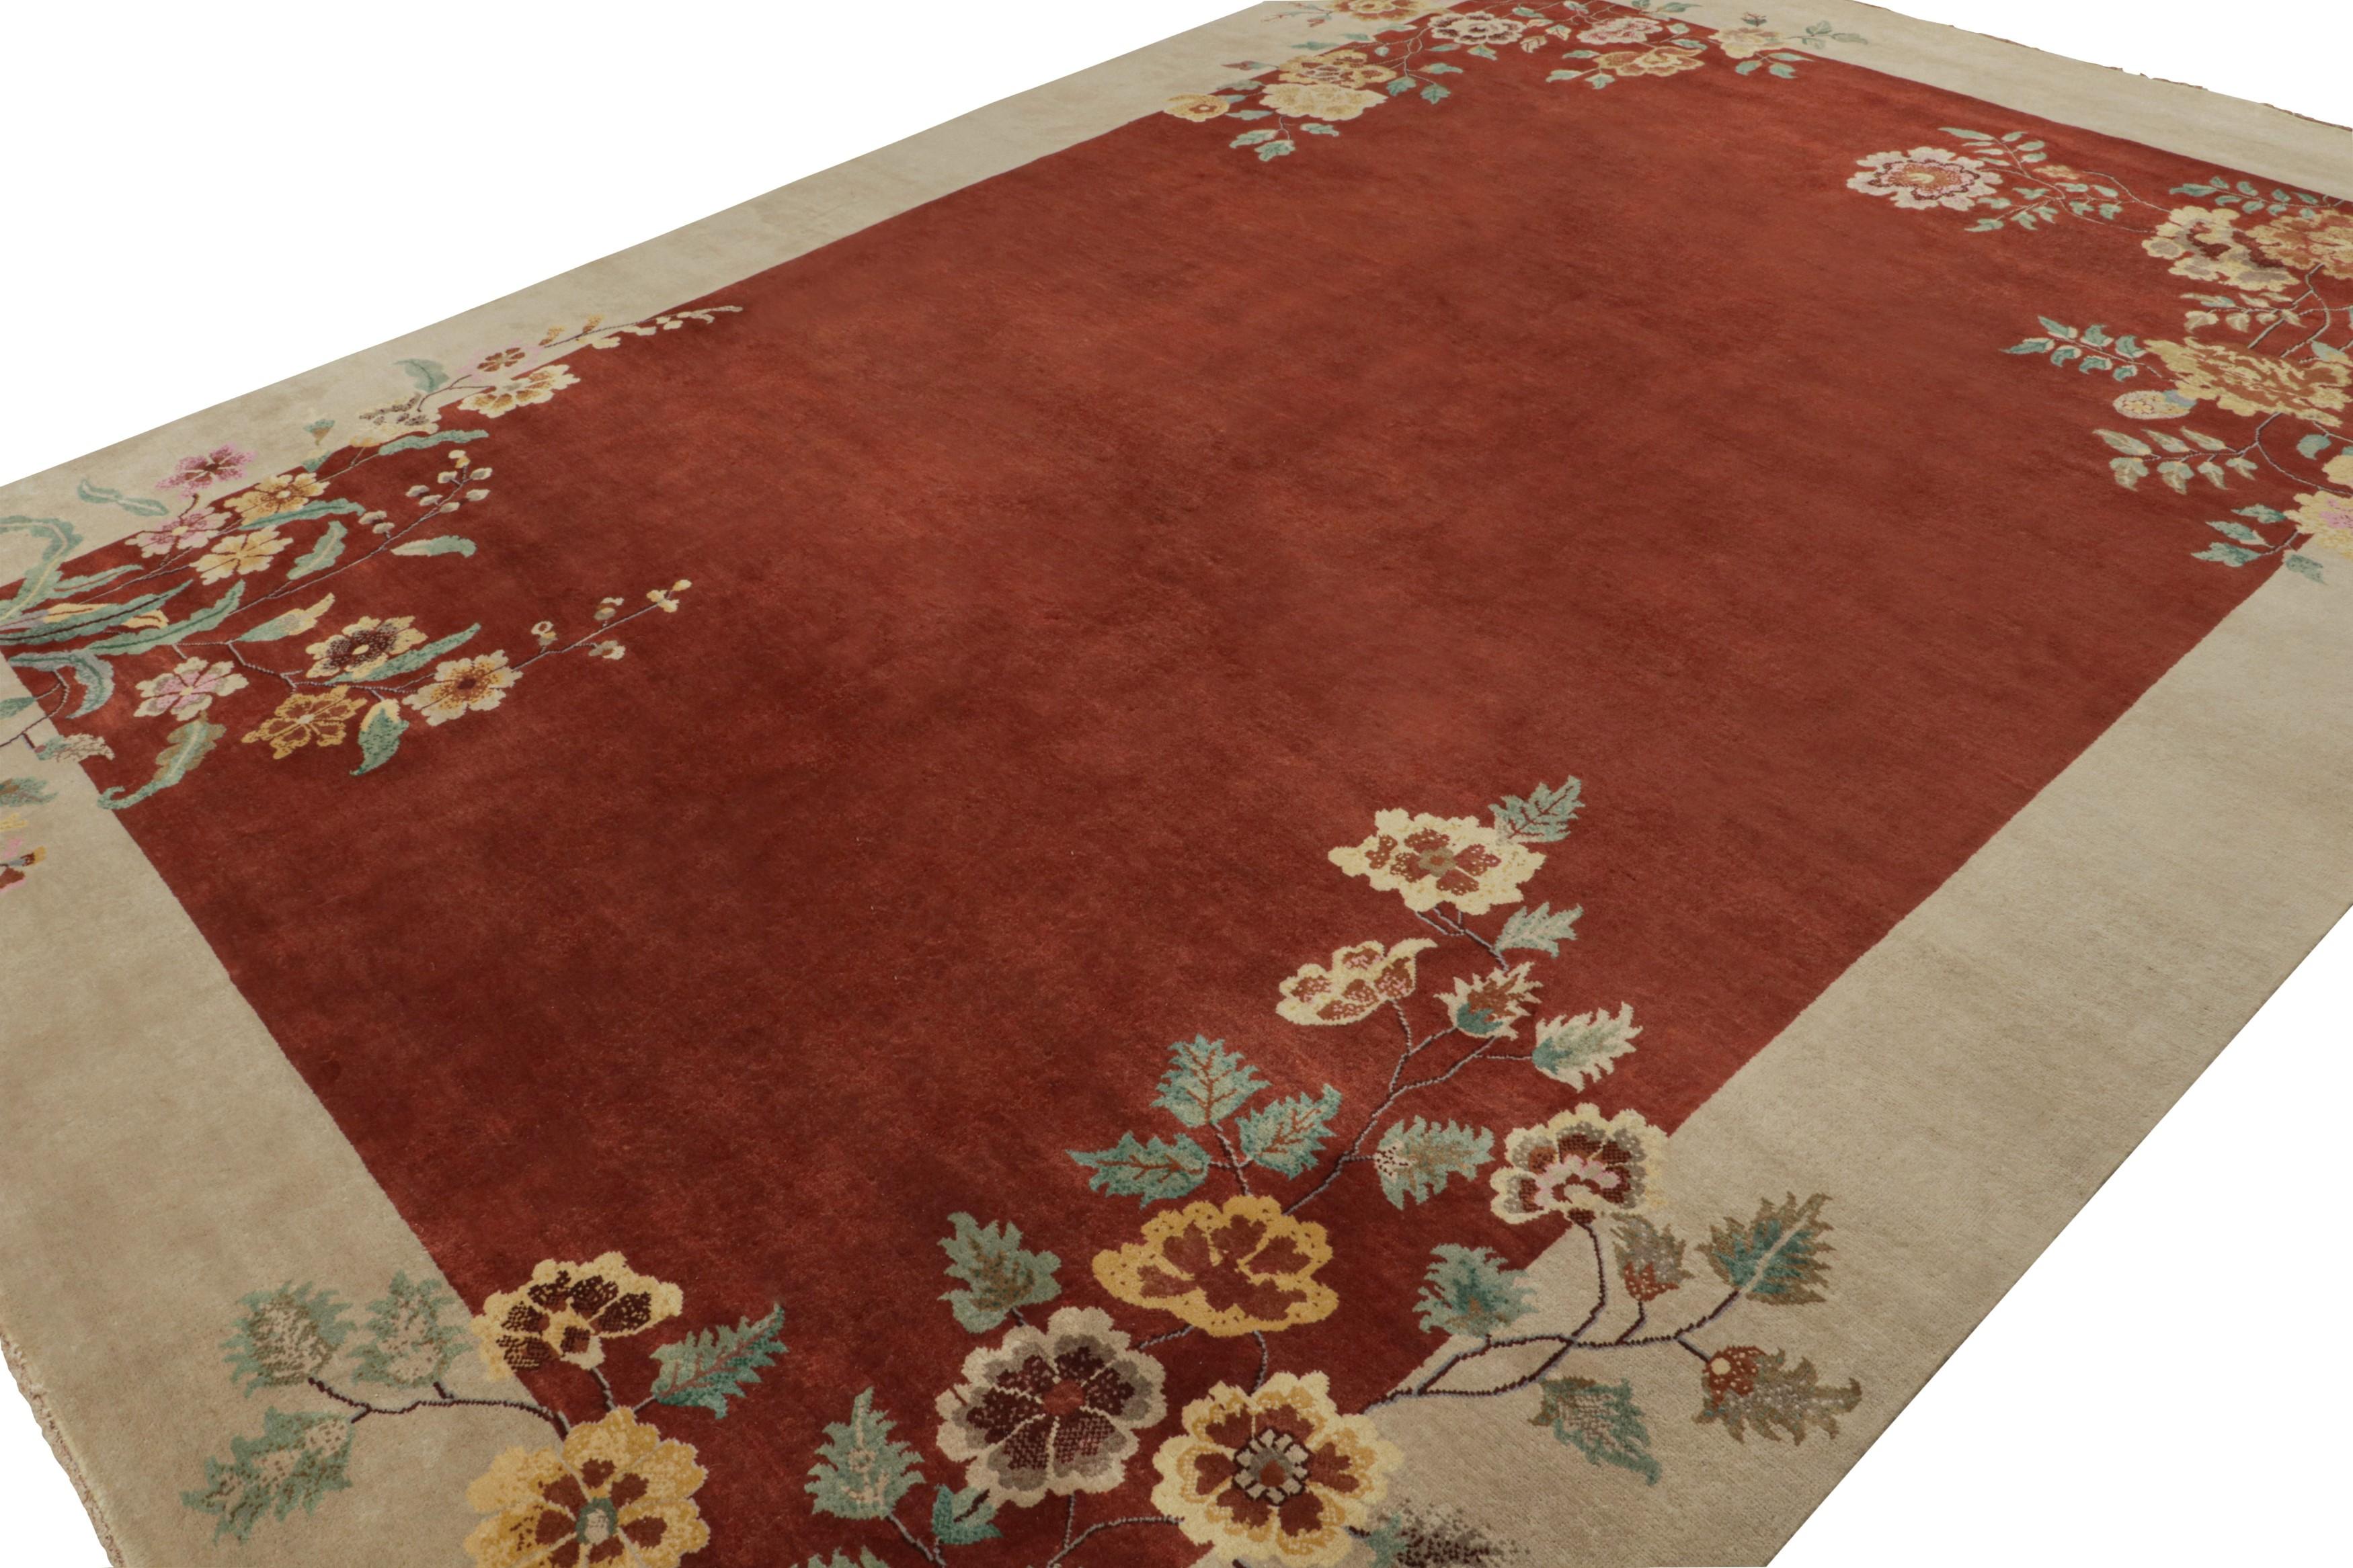 Dieser 10x14 große Teppich ist eine aufregende Neuheit in der zeitgenössischen Art-Deco-Teppichkollektion von Rug & Kilim.

Über das Design: 

Dieser handgeknüpfte Wollteppich ist vom chinesischen Art-Déco-Stil der 1920er Jahre inspiriert. Das